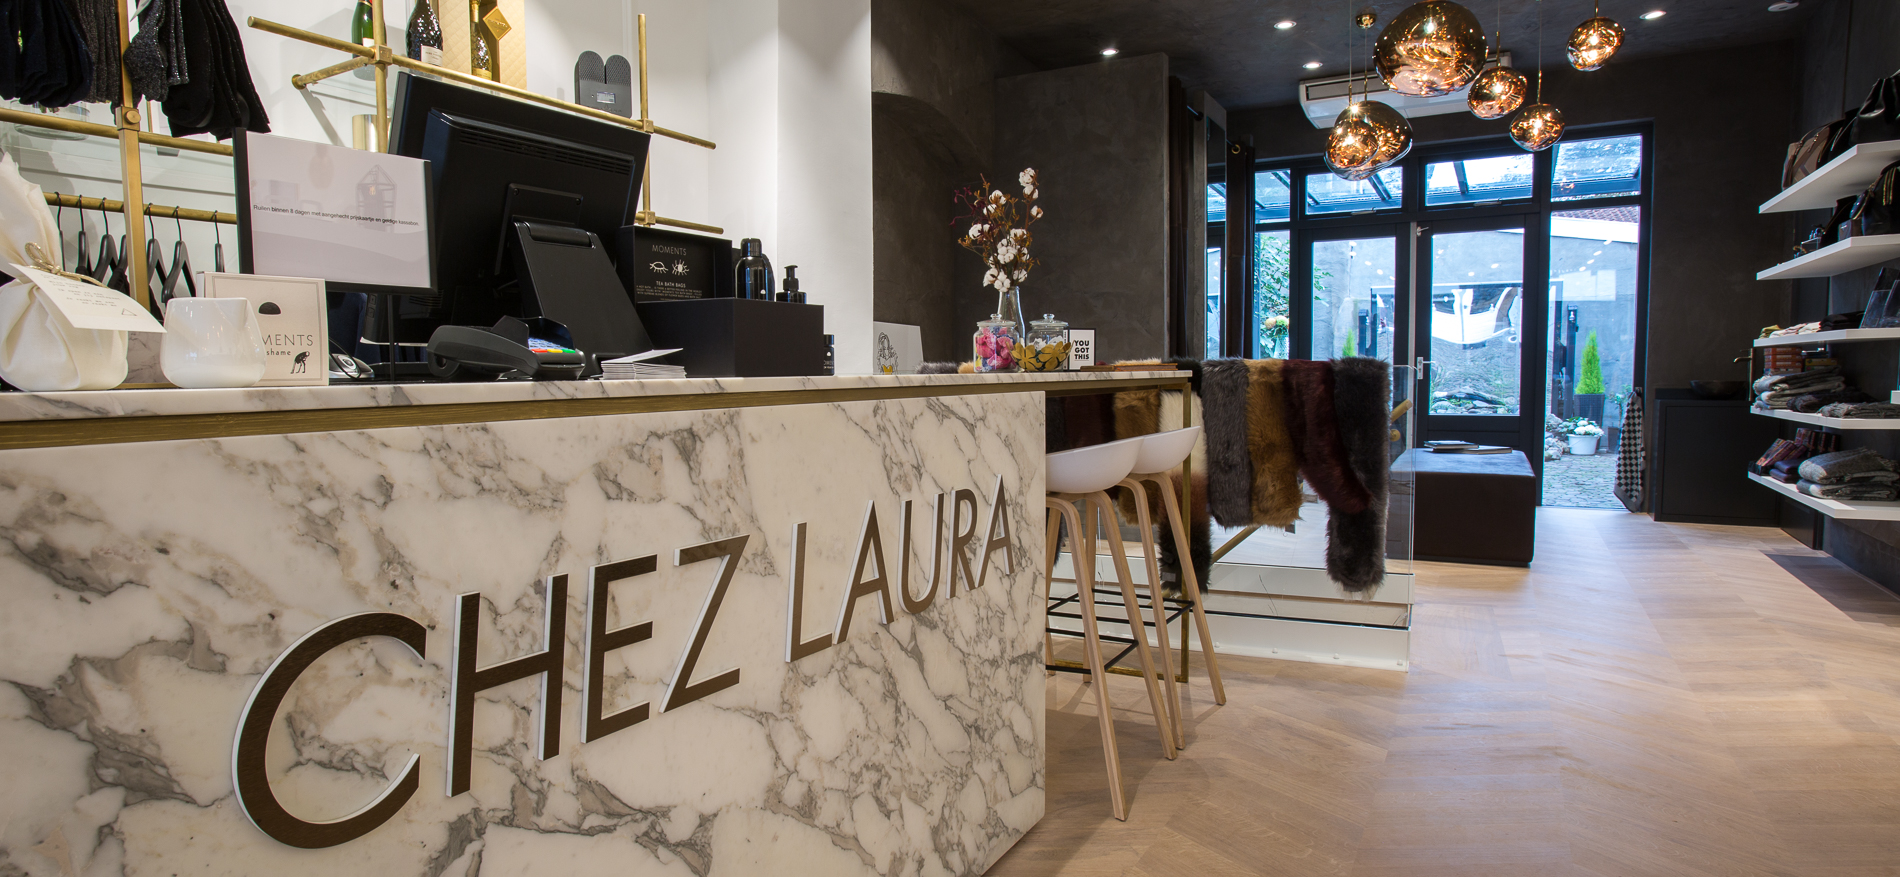 Chez Laura | Harderwijk (NL) - 